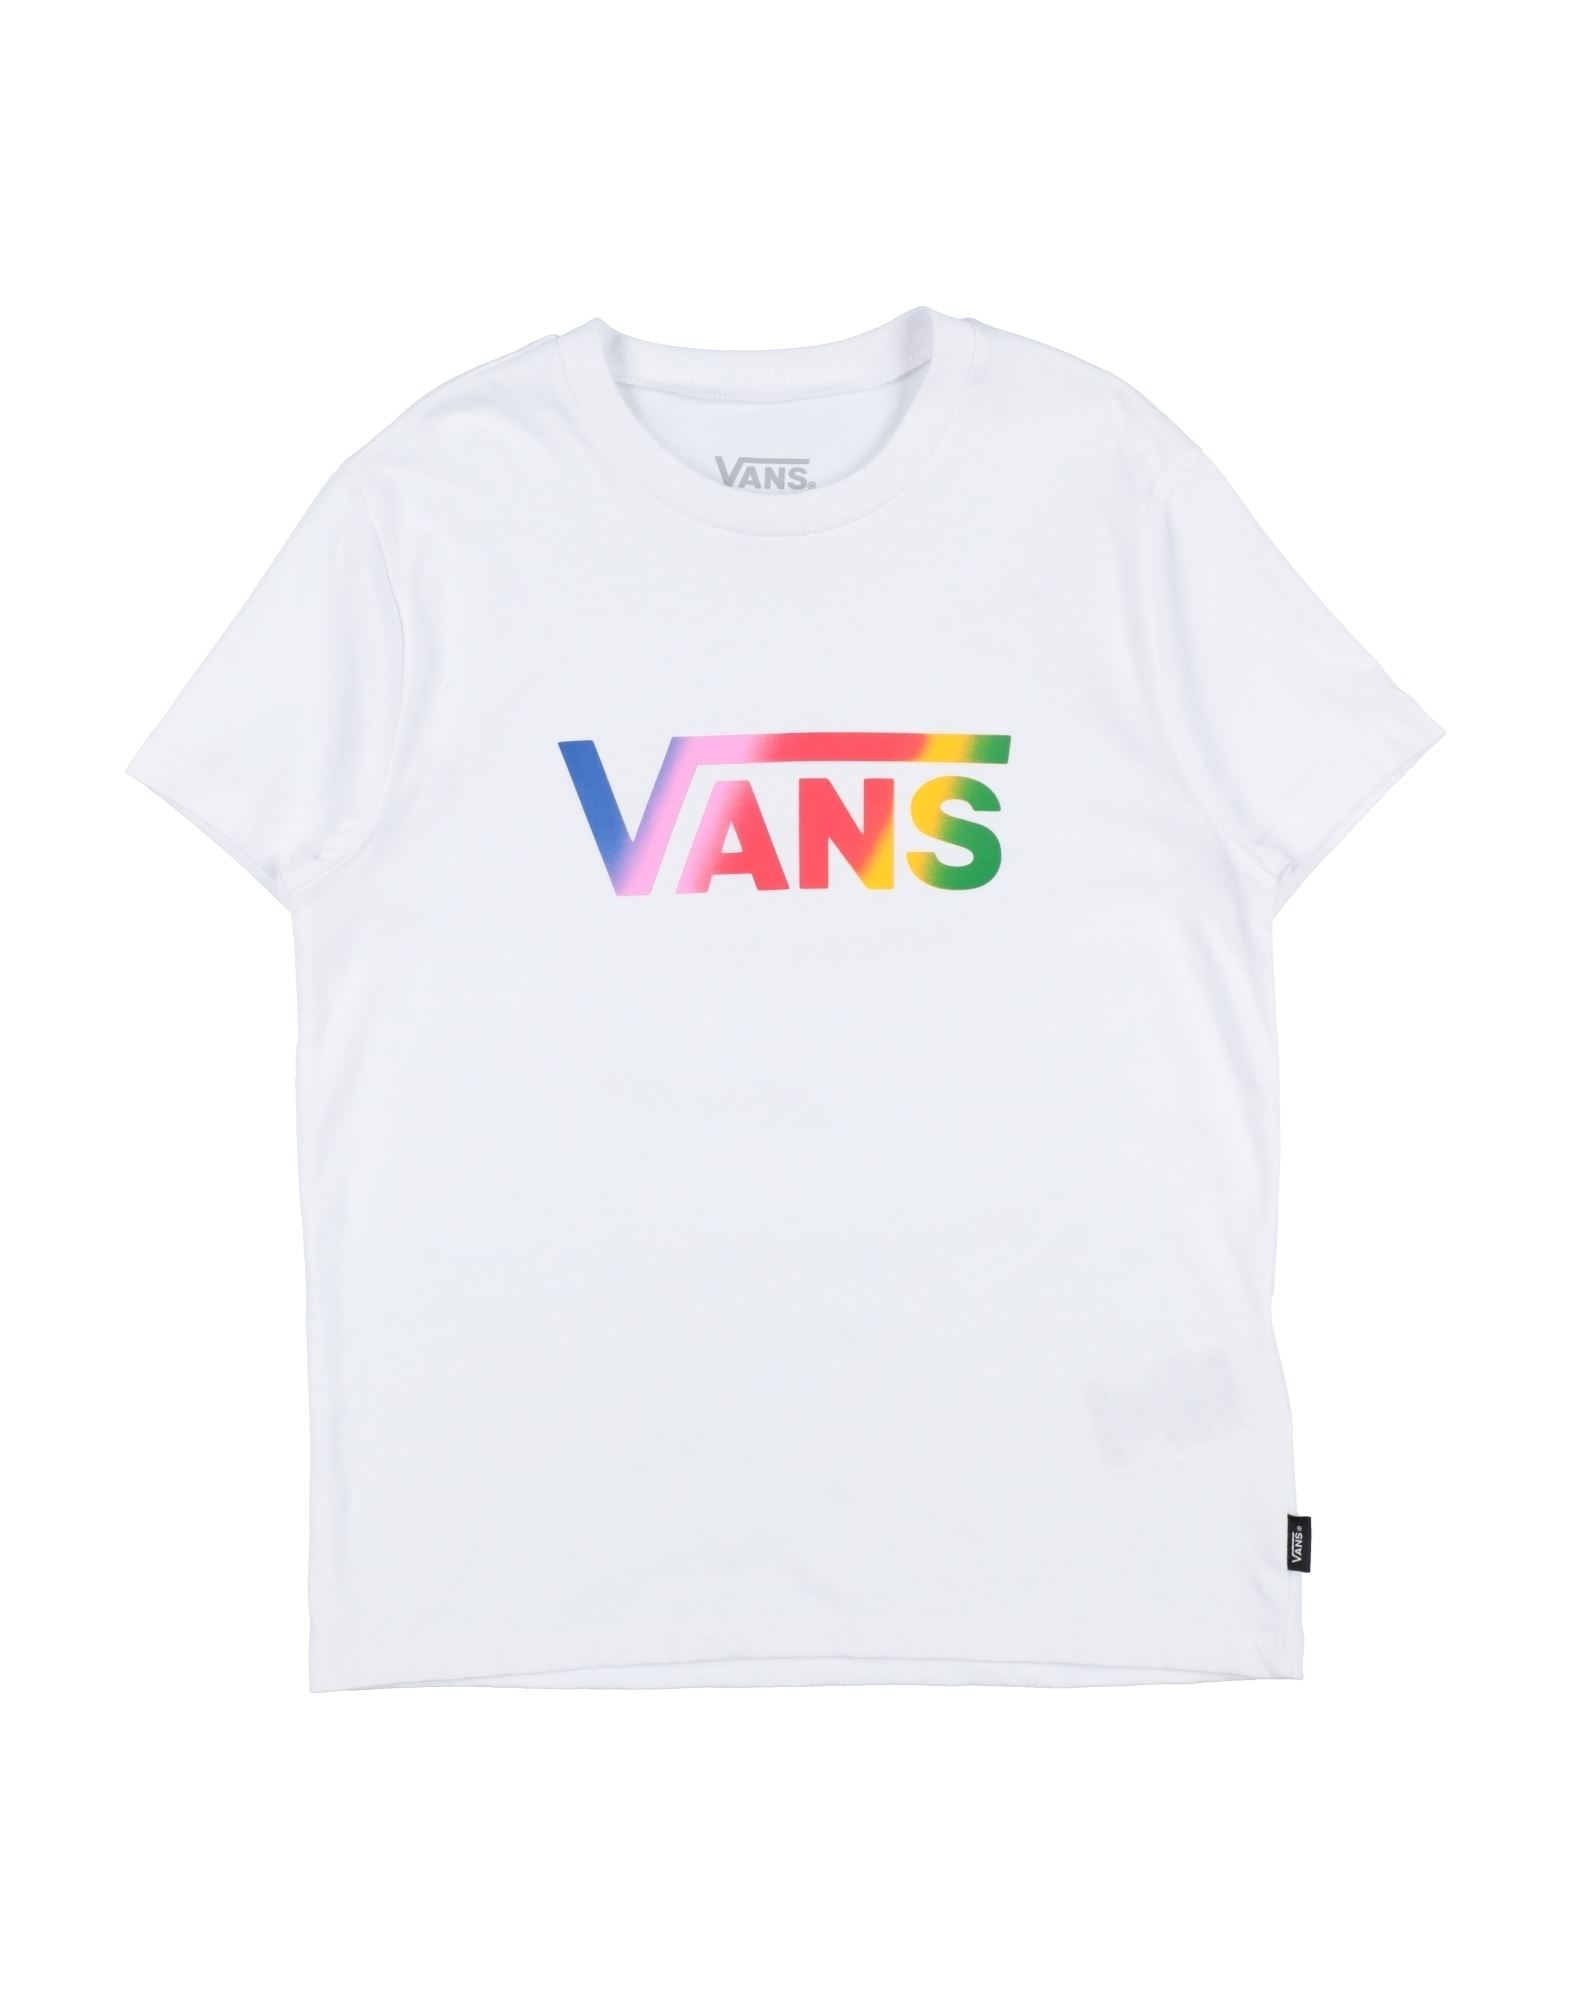 VANS T-shirts Kinder Weiß von VANS